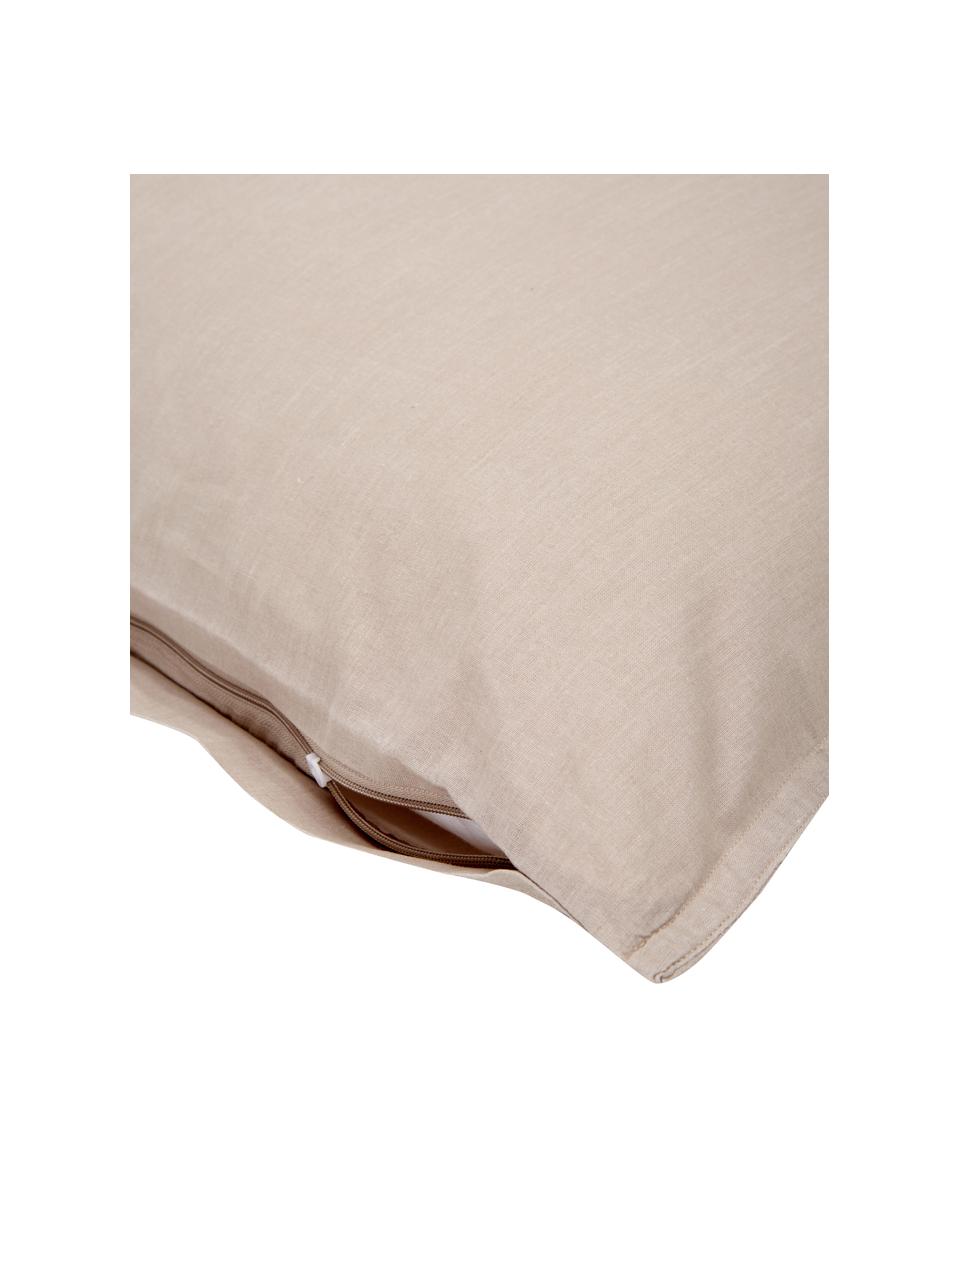 Poszewka na poduszkę z bawełny z efektem sprania Arlene, 2 szt., Beżowy, S 40 x D 80 cm